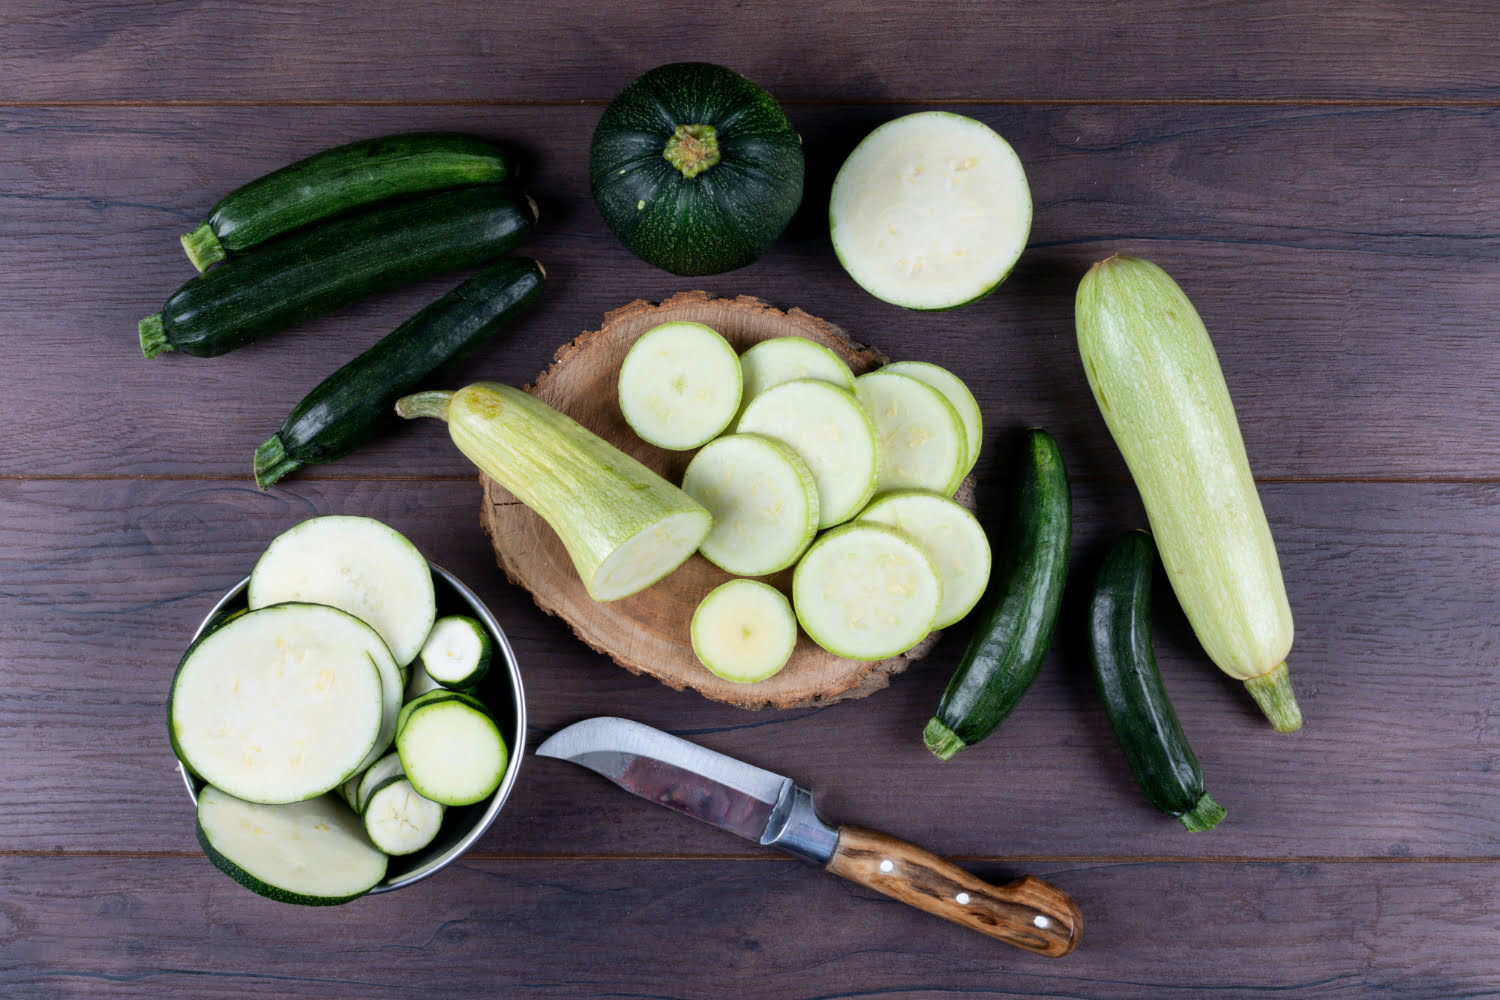 Zucchini – beneficii, proprietăți și moduri de utilizare. Descoperă rețete savuroase cu zucchini